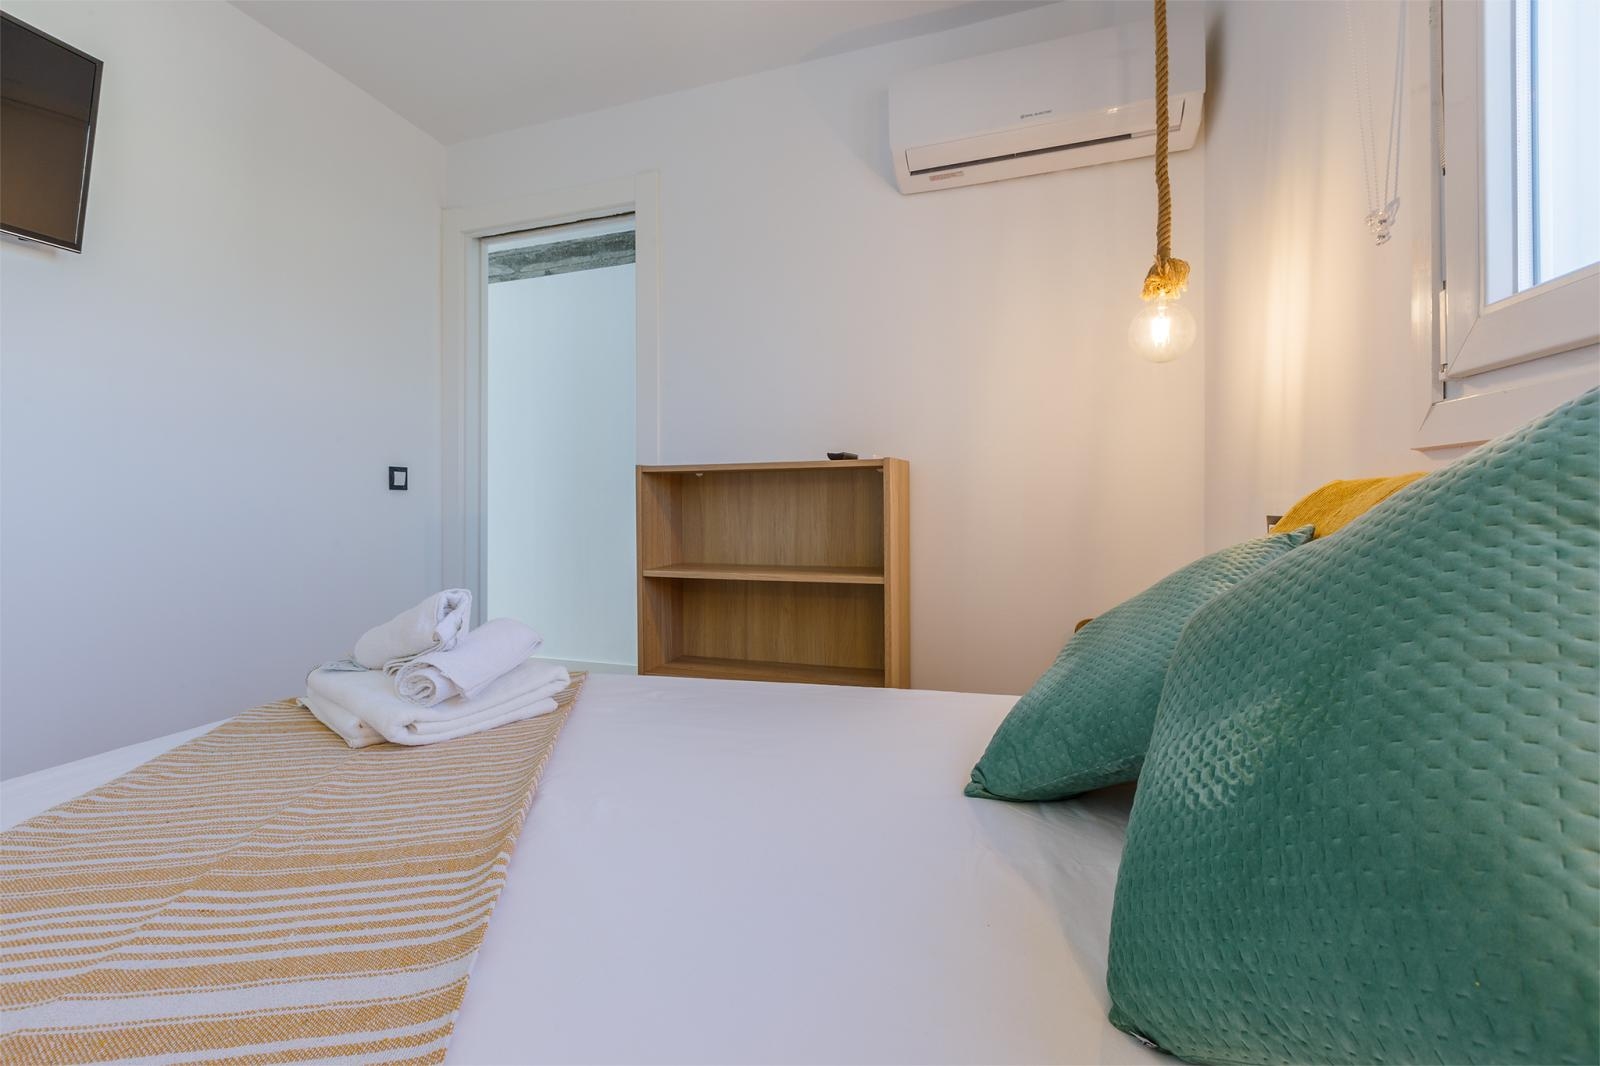 Magnificent luxury apartment on the beachfront in Torre del Mar, Malaga, Costa del Sol